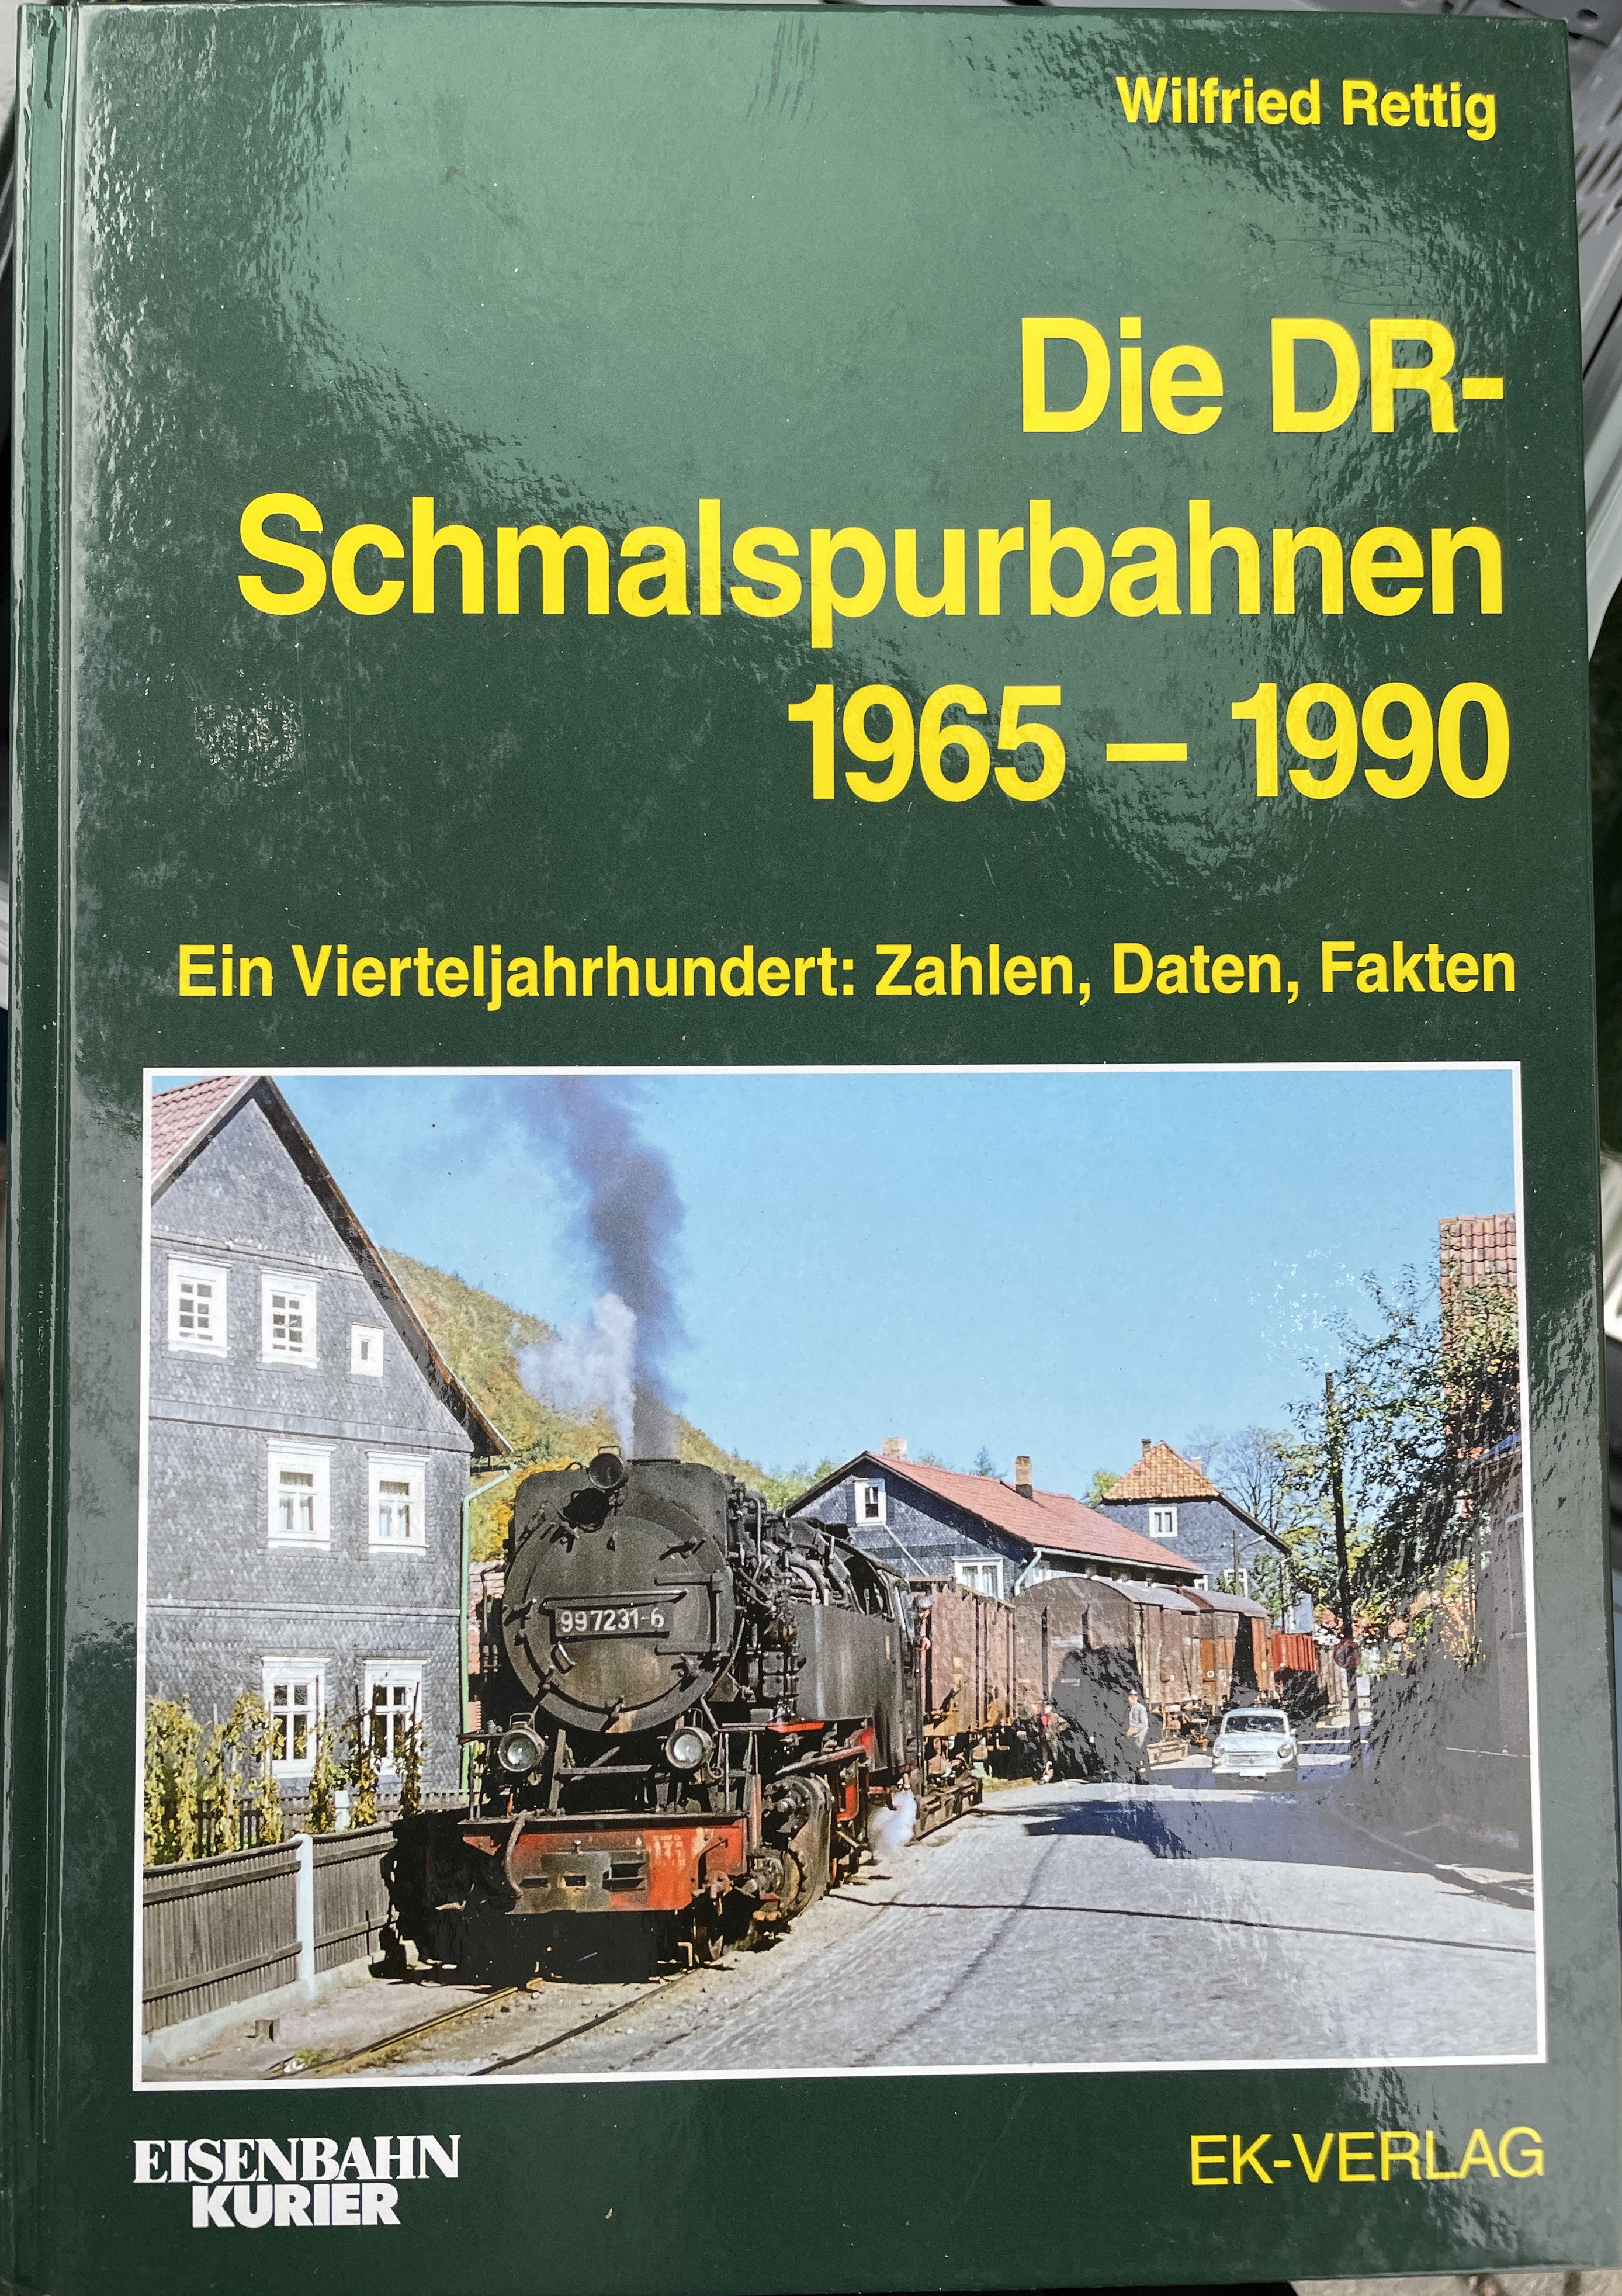 Die DR-Schmalspurbahnen 1965-1990 von Wilfried Rettig, EK-Verlag